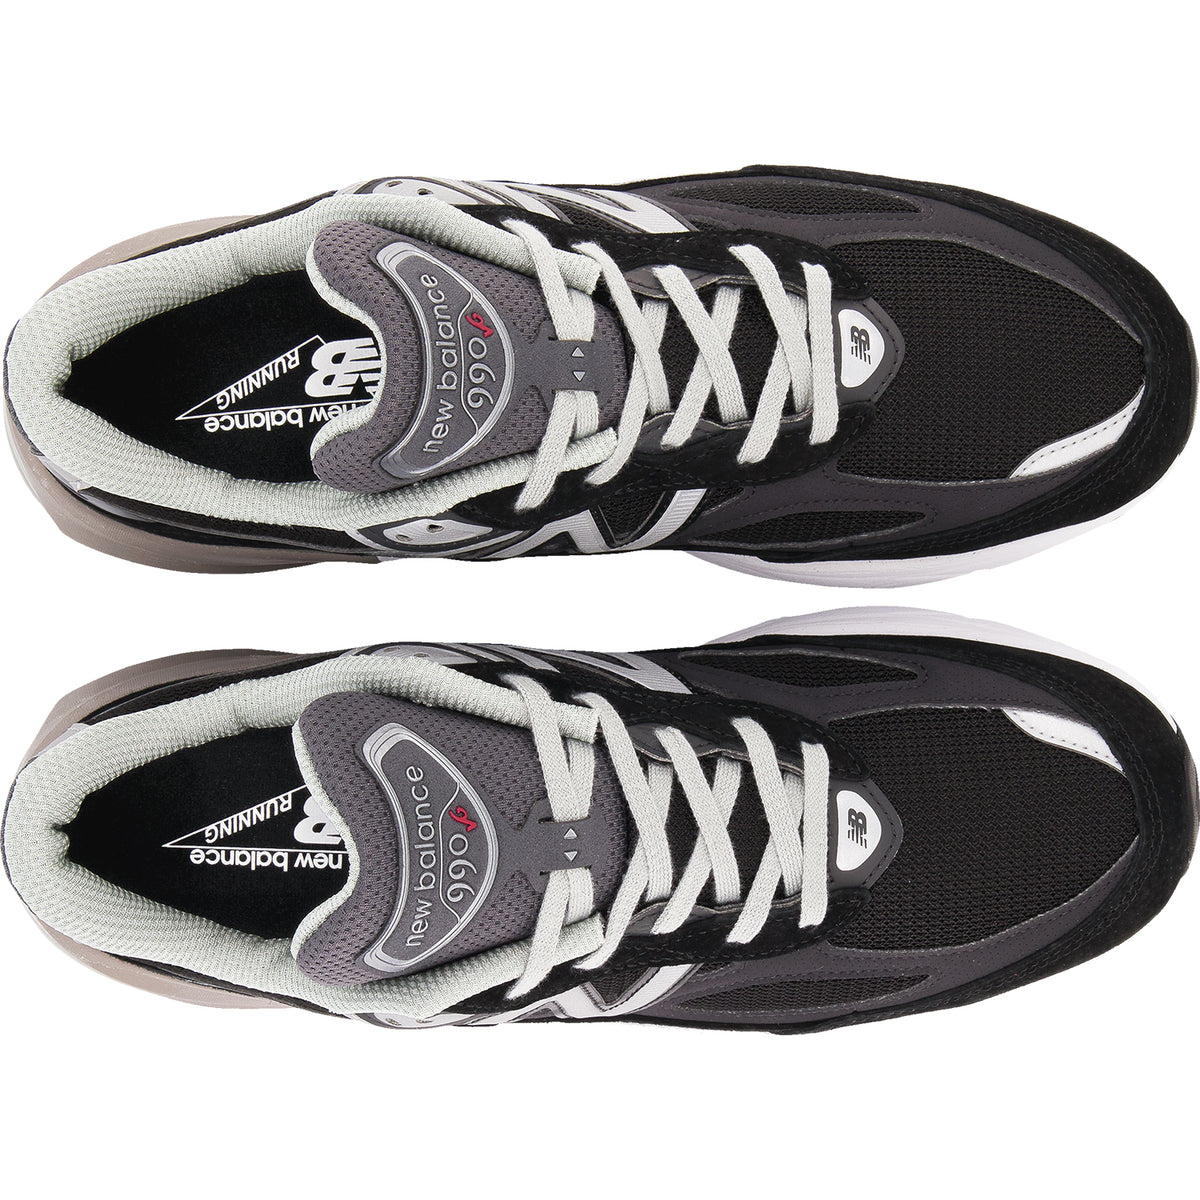 Grondig taal Klacht New Balance M990v6 Black | Men's Running Shoes | Footwear etc.